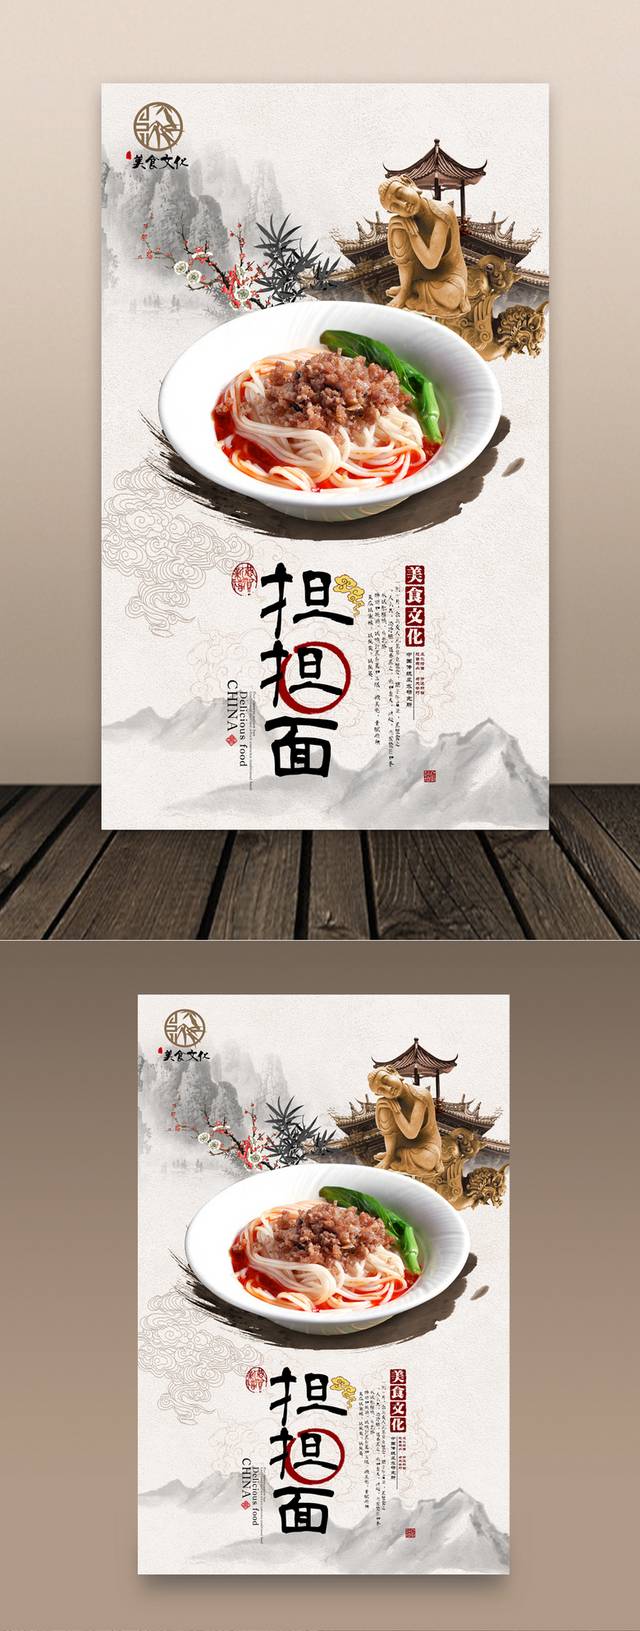 中国风古典担担面宣传海报设计psd